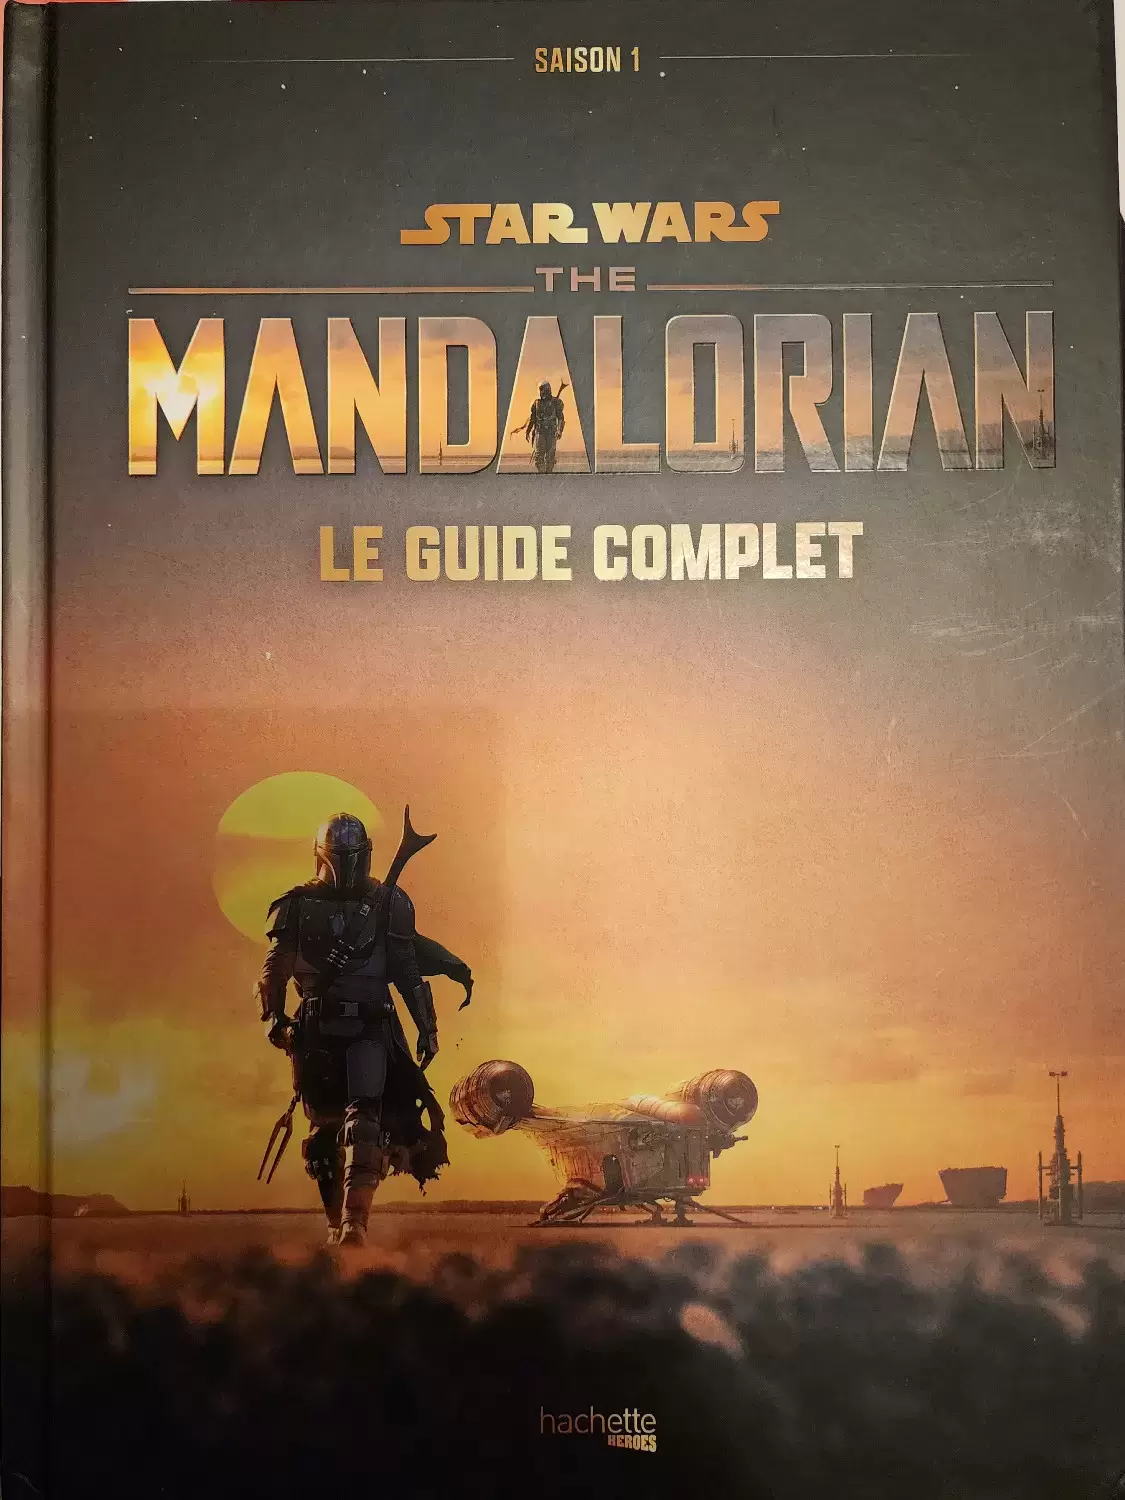 Beaux livres Star Wars - The Mandalorian - Le Guide Complet (saison 1)